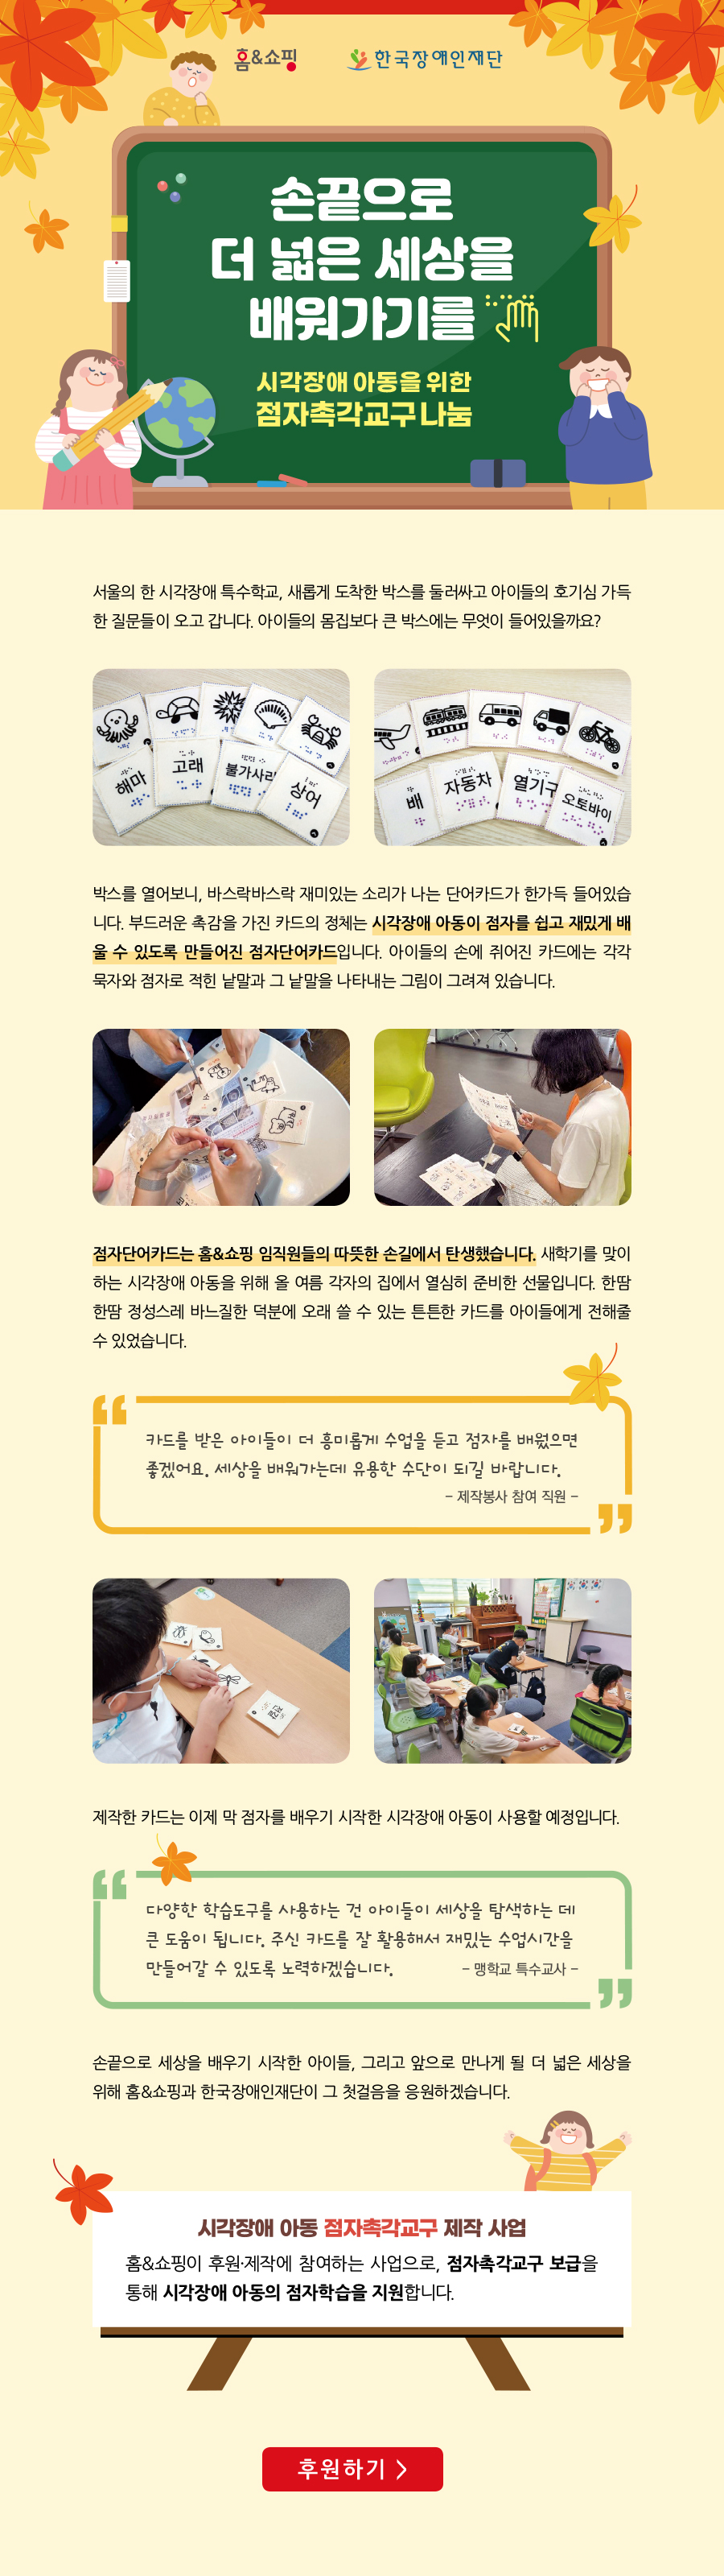 손끝으로 더 넓은 세상을 배워가기를
-시각장애 아동을 위한 점자촉각교구 나눔-

서울의 한 시각장애 특수학교, 새롭게 도착한 박스를 둘러싸고 아이들의 호기심 가득한 질문들이 오고 갑니다. 아이들의 몸집보다 큰 박스에는 무엇이 들어있을까요?

박스를 열어보니, 바스락바스락 재미있는 소리가 나는 단어카드가 한가득 들어있습니다. 부드러운 촉감을 가진 카드의 정체는 시각장애 아동이 점자를 쉽고 재밌게 배울 수 있도록 만들어진 점자단어카드입니다. 아이들의 손에 쥐어진 카드에는 각각 묵자와 점자로 적힌 낱말과 그 낱말을 나타내는 그림이 그려져 있습니다. 


점자단어카드는 홈&쇼핑 임직원들의 따뜻한 손길에서 탄생했습니다. 새학기를 맞이하는 시각장애 아동을 위해 올 여름 각자의 집에서 열심히 준비한 선물입니다. 한땀 한땀 정성스레 바느질한 덕분에 오래 쓸 수 있는 튼튼한 카드를 아이들에게 전해줄 수 있었습니다.
“카드를 받은 아이들이 더 흥미롭게 수업을 듣고 점자를 배웠으면 좋겠어요. 세상을 배워가는데 유용한 수단이 되길 바랍니다.” 
-제작봉사 참여 직원-

제작한 카드는 이제 막 점자를 배우기 시작한 시각장애 아동이 사용할 예정입니다. 

“다양한 학습도구를 사용하는 건 아이들이 세상을 탐색하는 데 큰 도움이 됩니다. 주신 카드를 잘 활용해서 재밌는 수업시간을 만들어갈 수 있도록 노력하겠습니다.”
- 맹학교 특수교사 - 

손끝으로 세상을 배우기 시작한 아이들, 그리고 앞으로 만나게 될 더 넓은 세상을 위해 홈앤쇼핑과 한국장애인재단이 그 첫걸음을 응원하겠습니다. 

[시각장애 아동 점자촉각교구 제작 사업]
홈&쇼핑이 후원·제작에 참여하는 사업으로, 점자촉각교구 보급을 통해 시각장애 아동의 점자학습을 지원합니다.